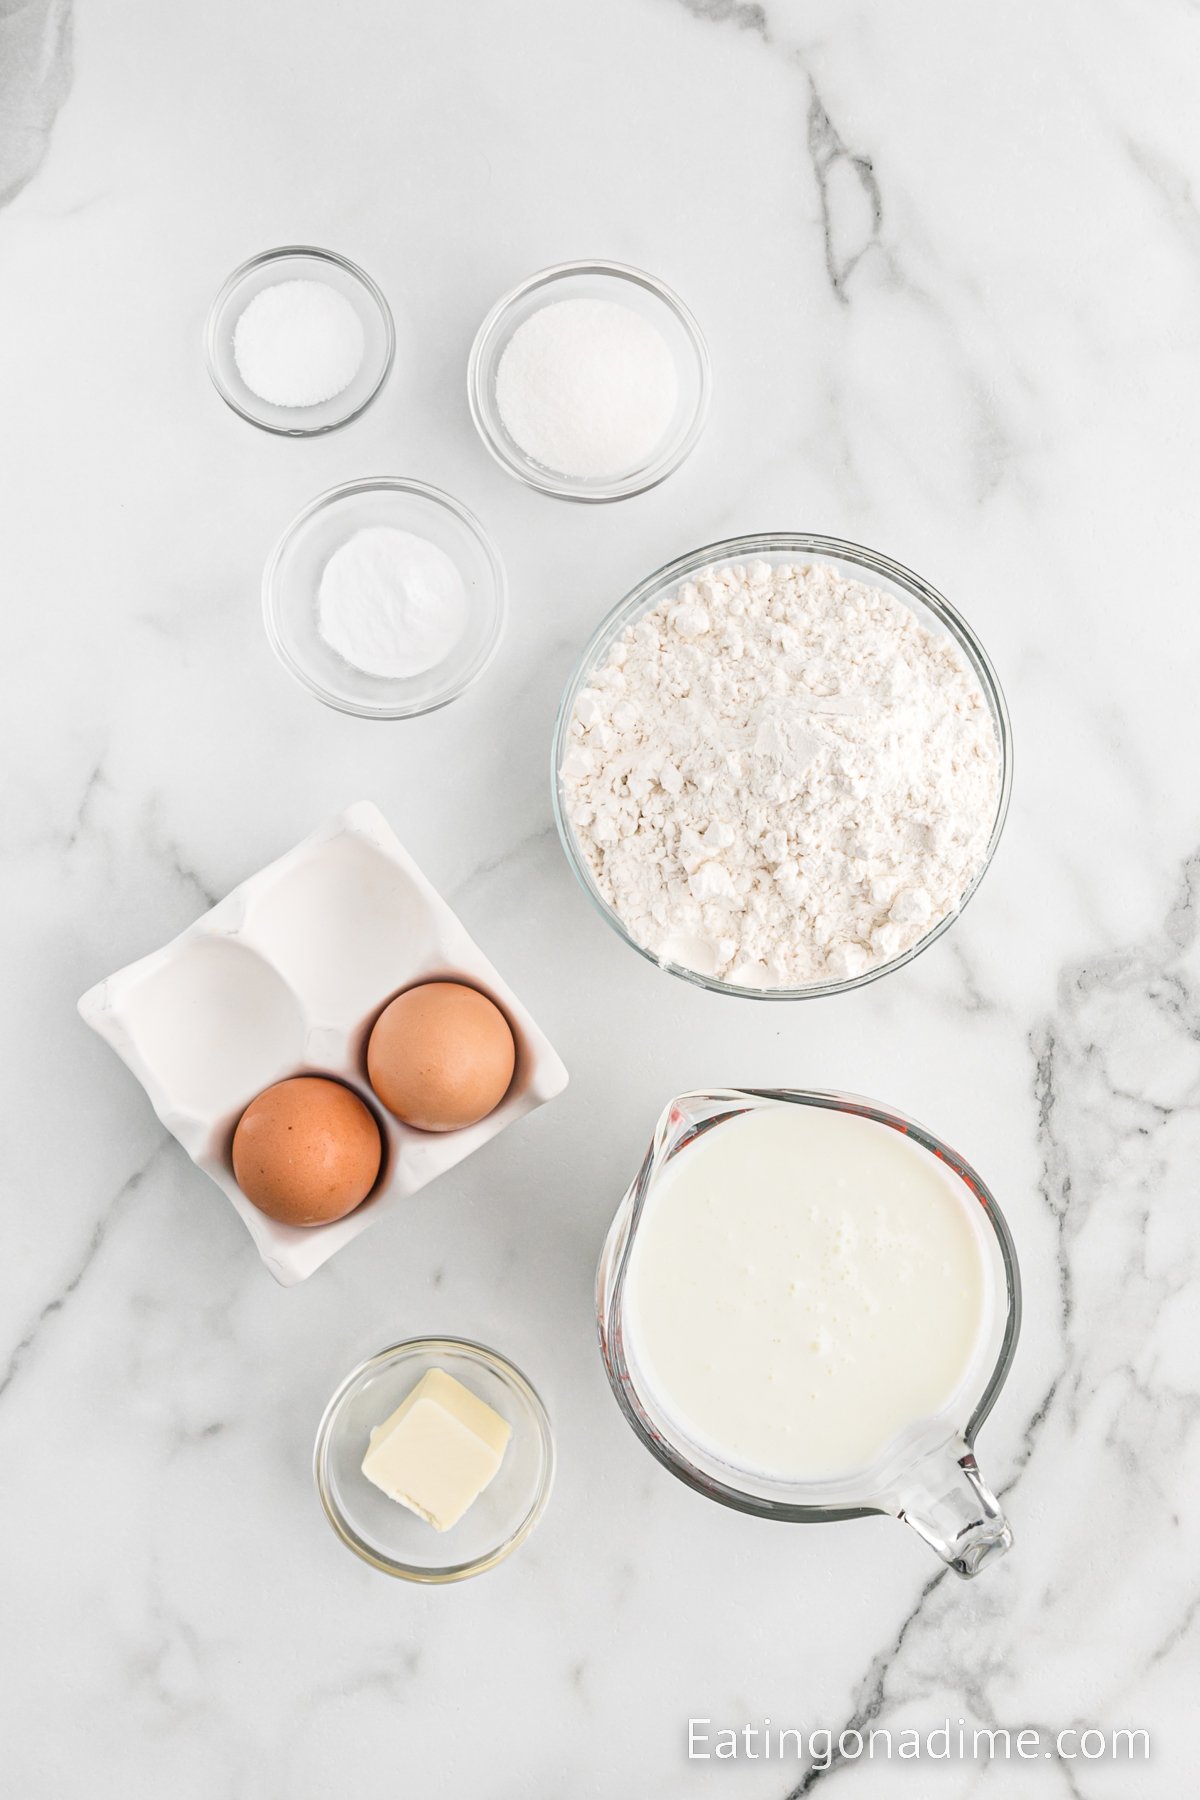 Ingredients needed - flour, baking soda, salt, sugar, eggs, buttermilk, butter